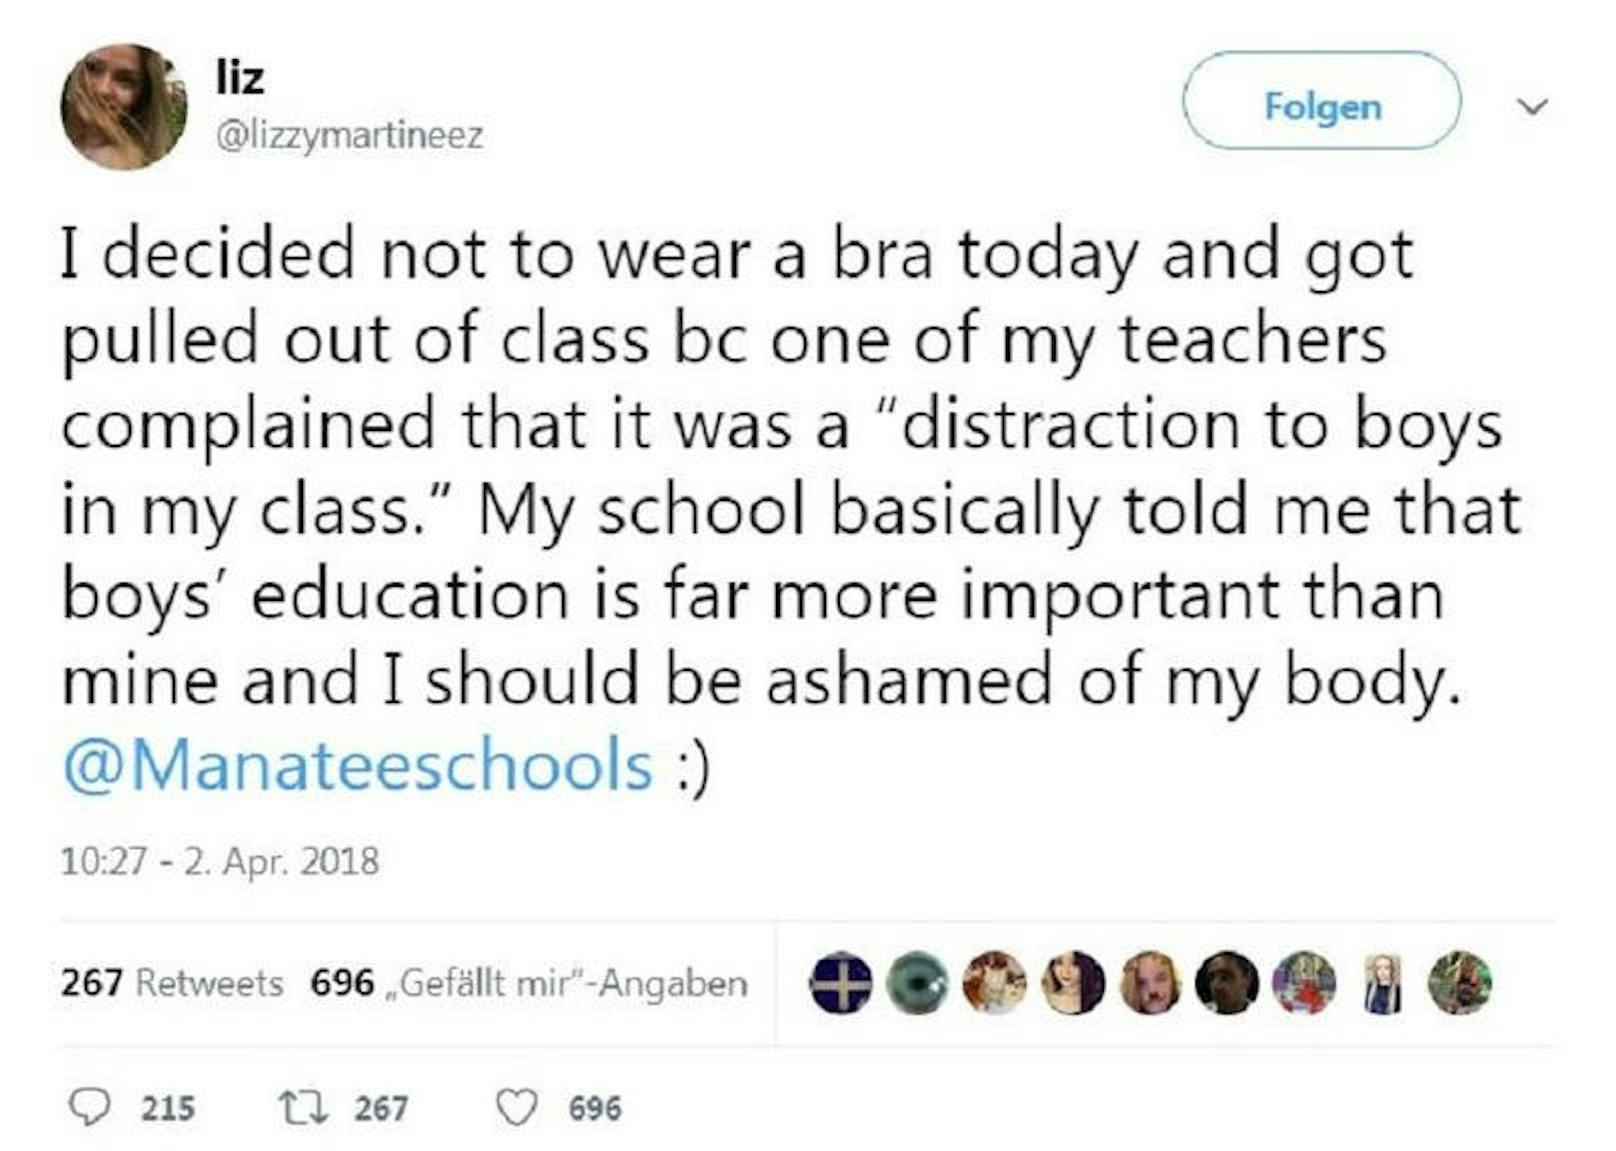 Auf Twitter machte sie ihrem Ärger Luft. "Meine Schule zeigte mir so im Grunde, dass die Bildung der Jungs wichtiger ist als meine und dass ich mich für meinen Körper schämen sollte."